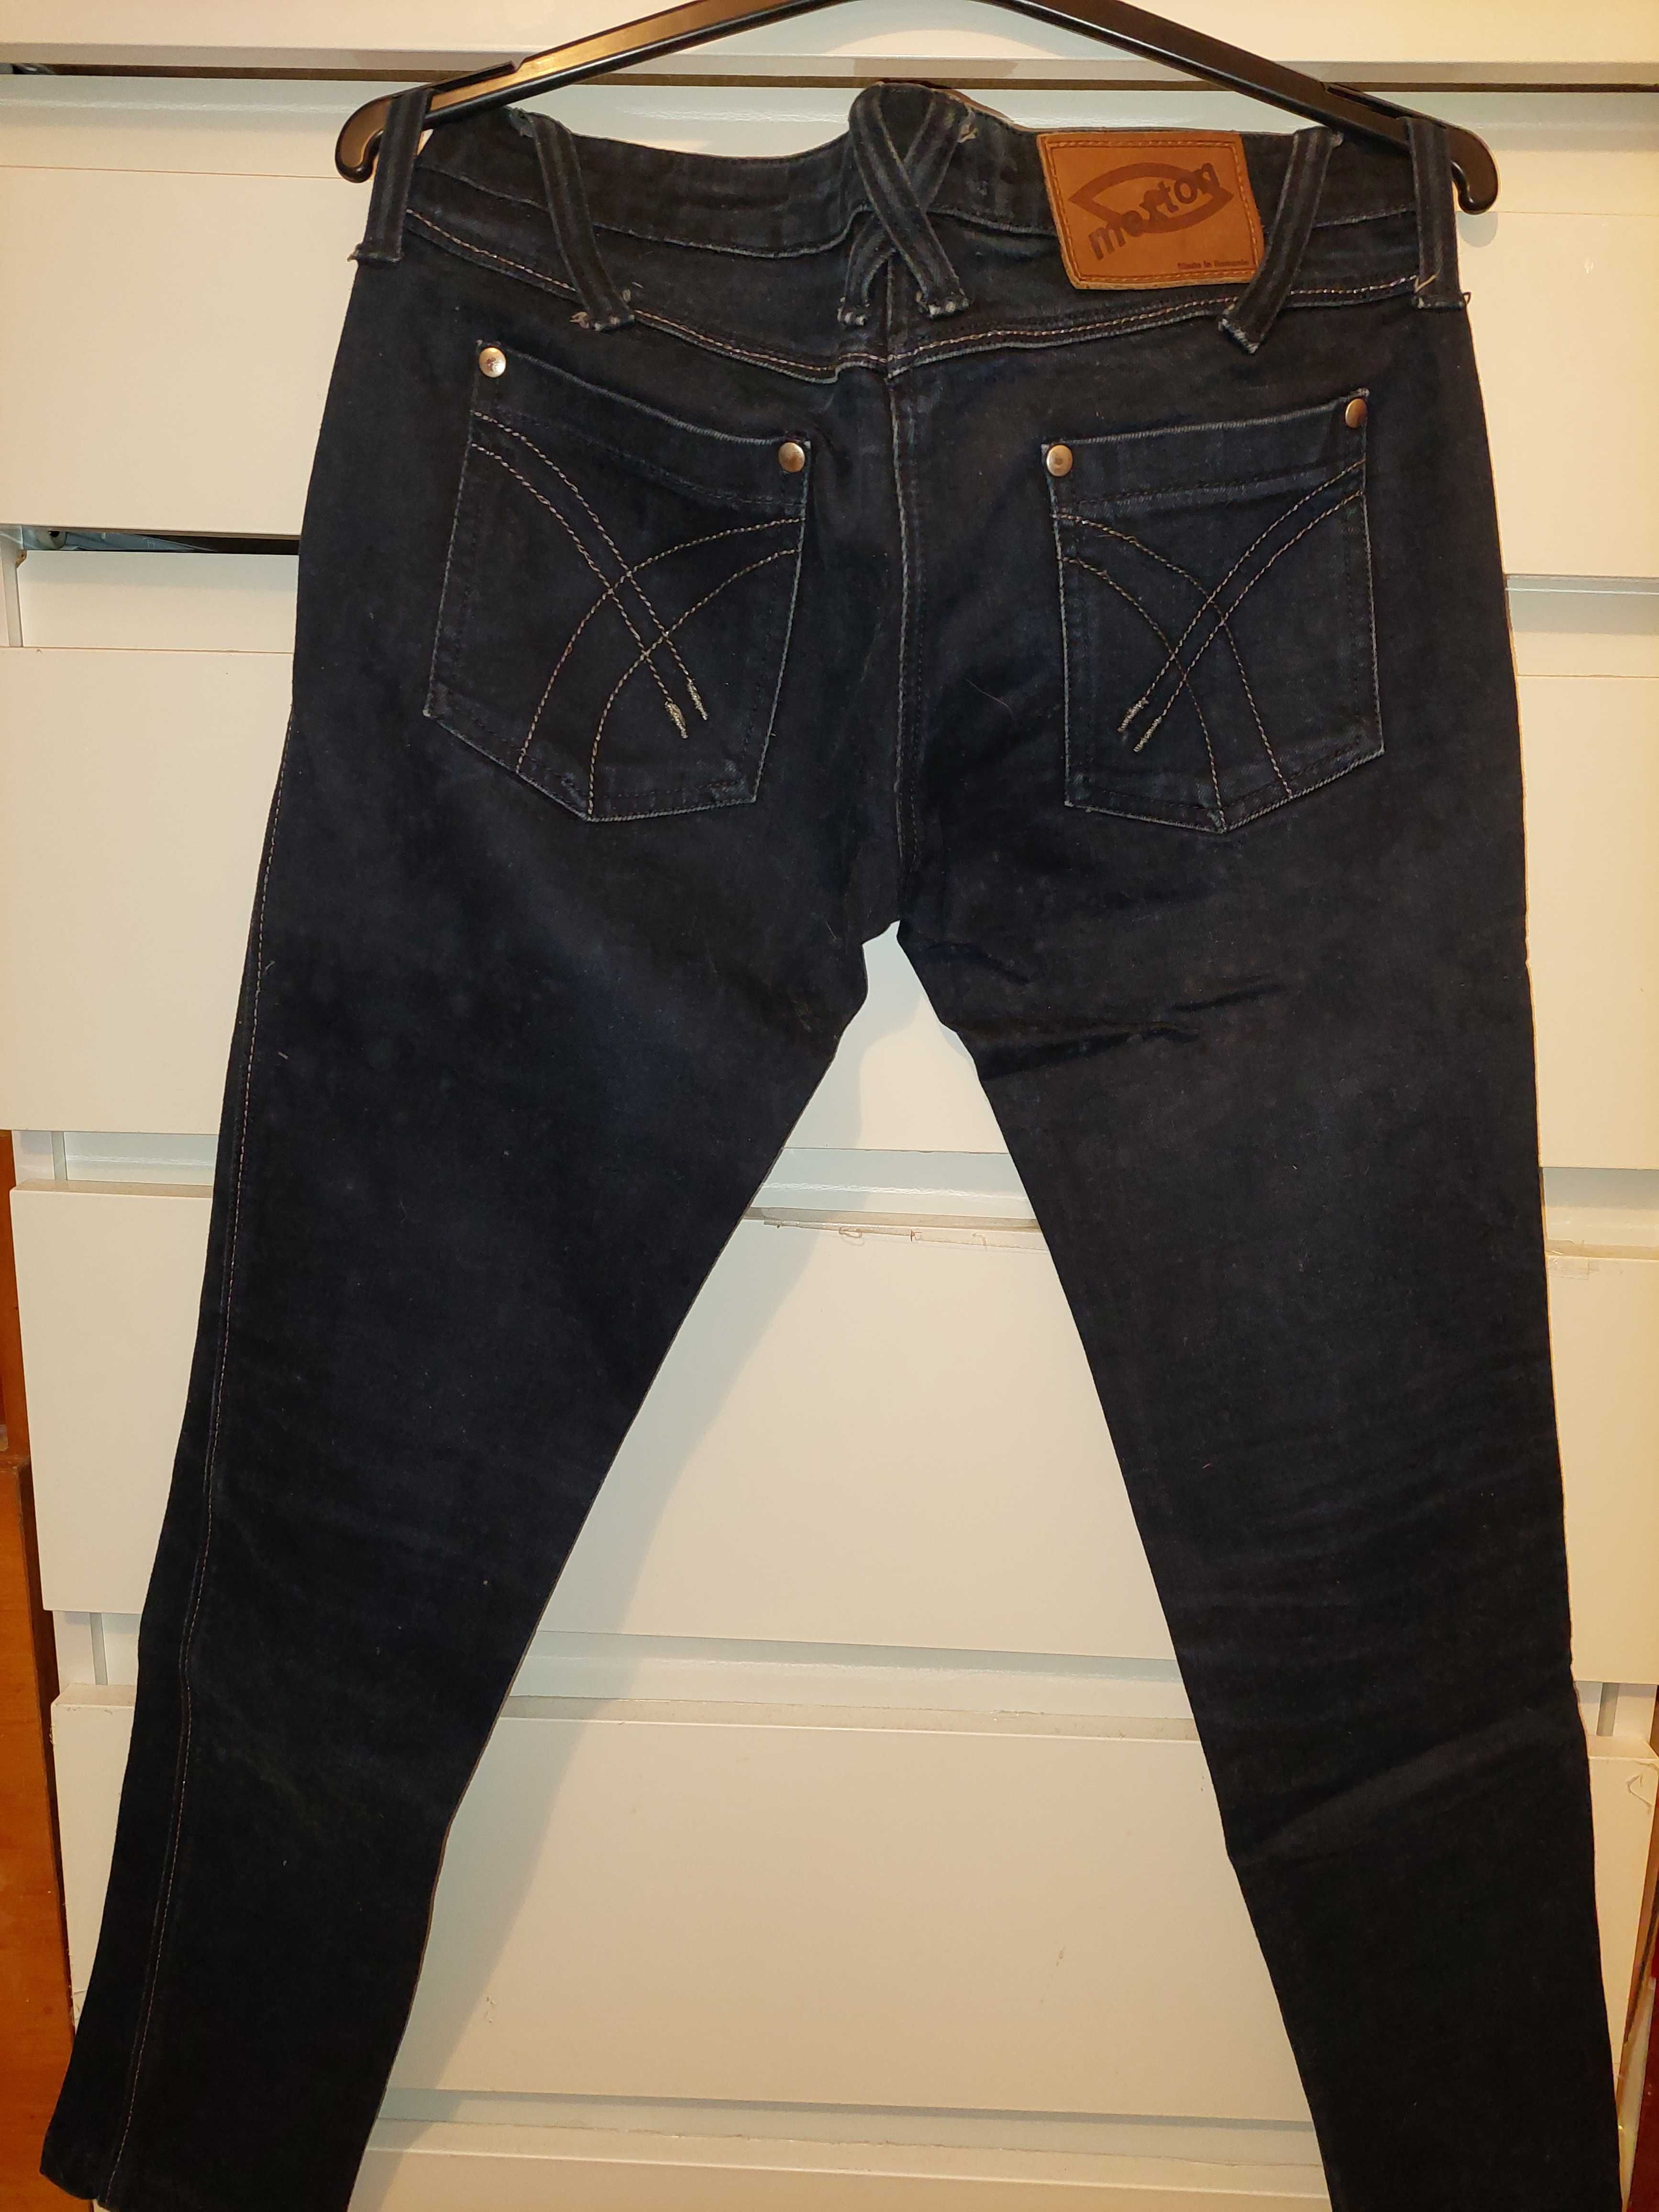 Blugi/jeans/pantaloni Mexton mar 38 TRANSPORT GRATUIT